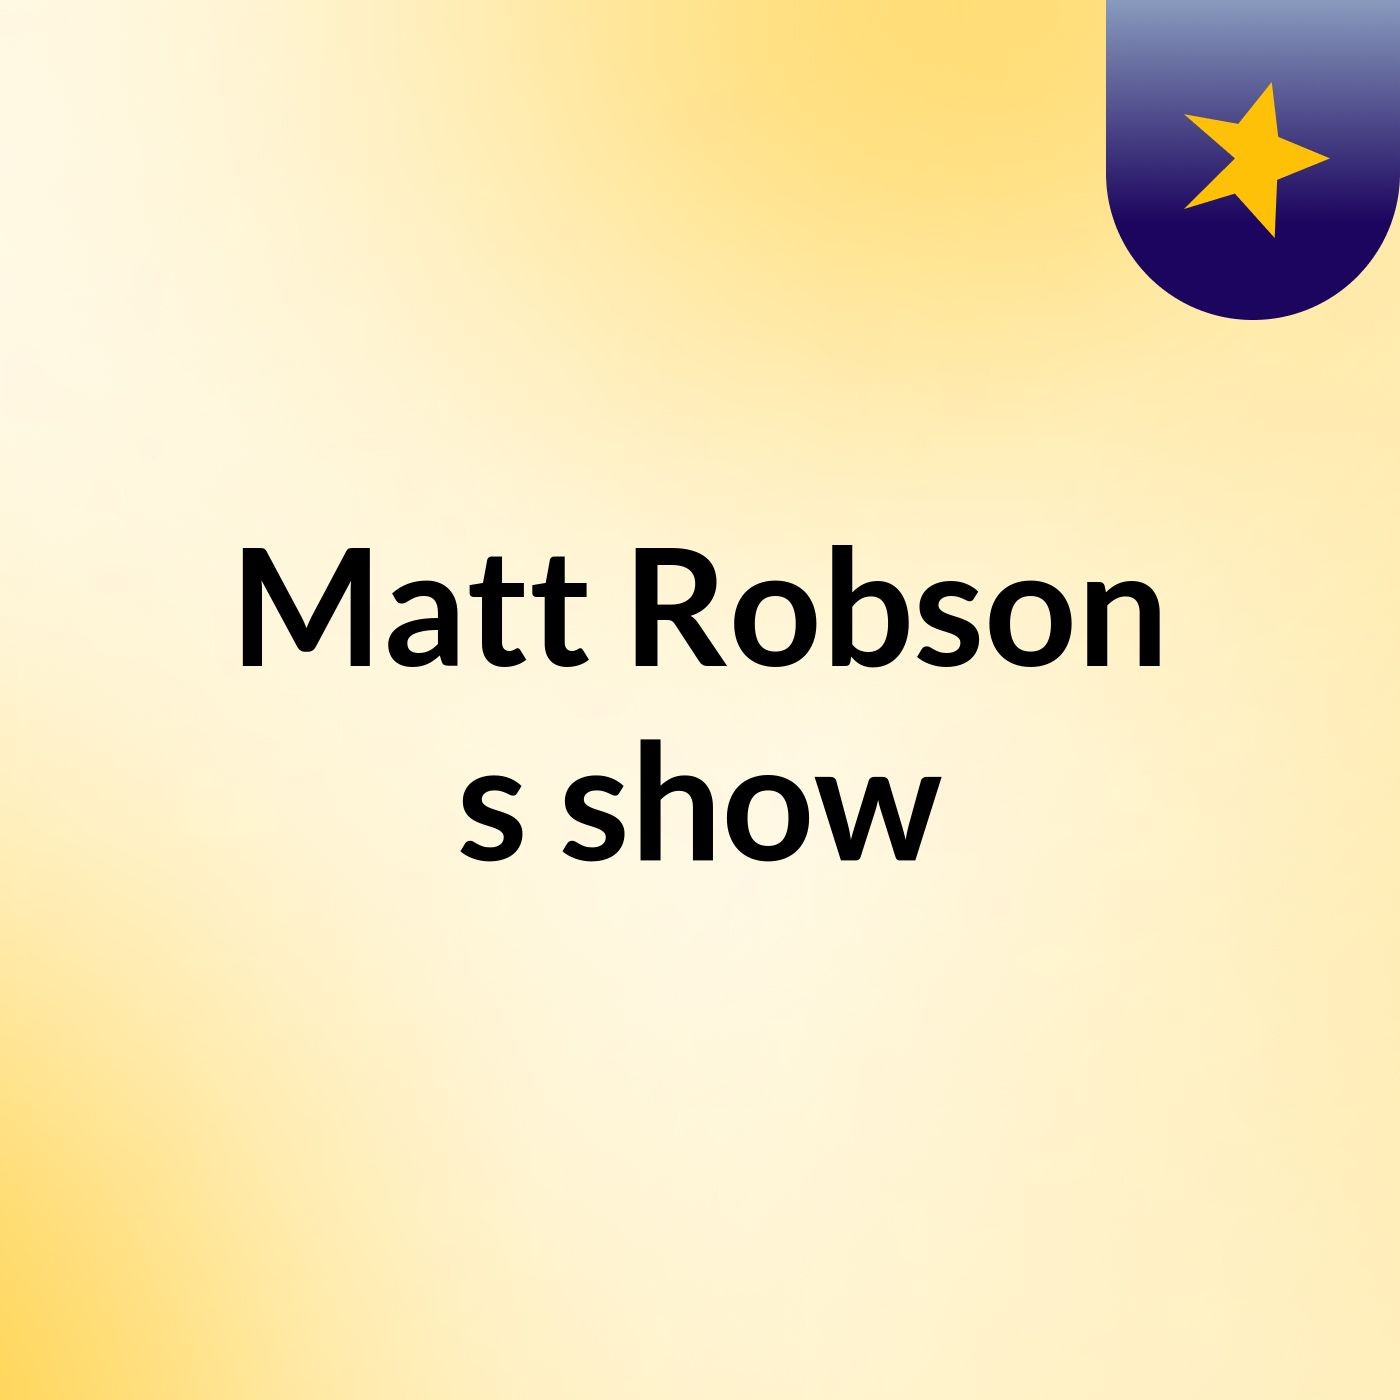 Matt Robson's show